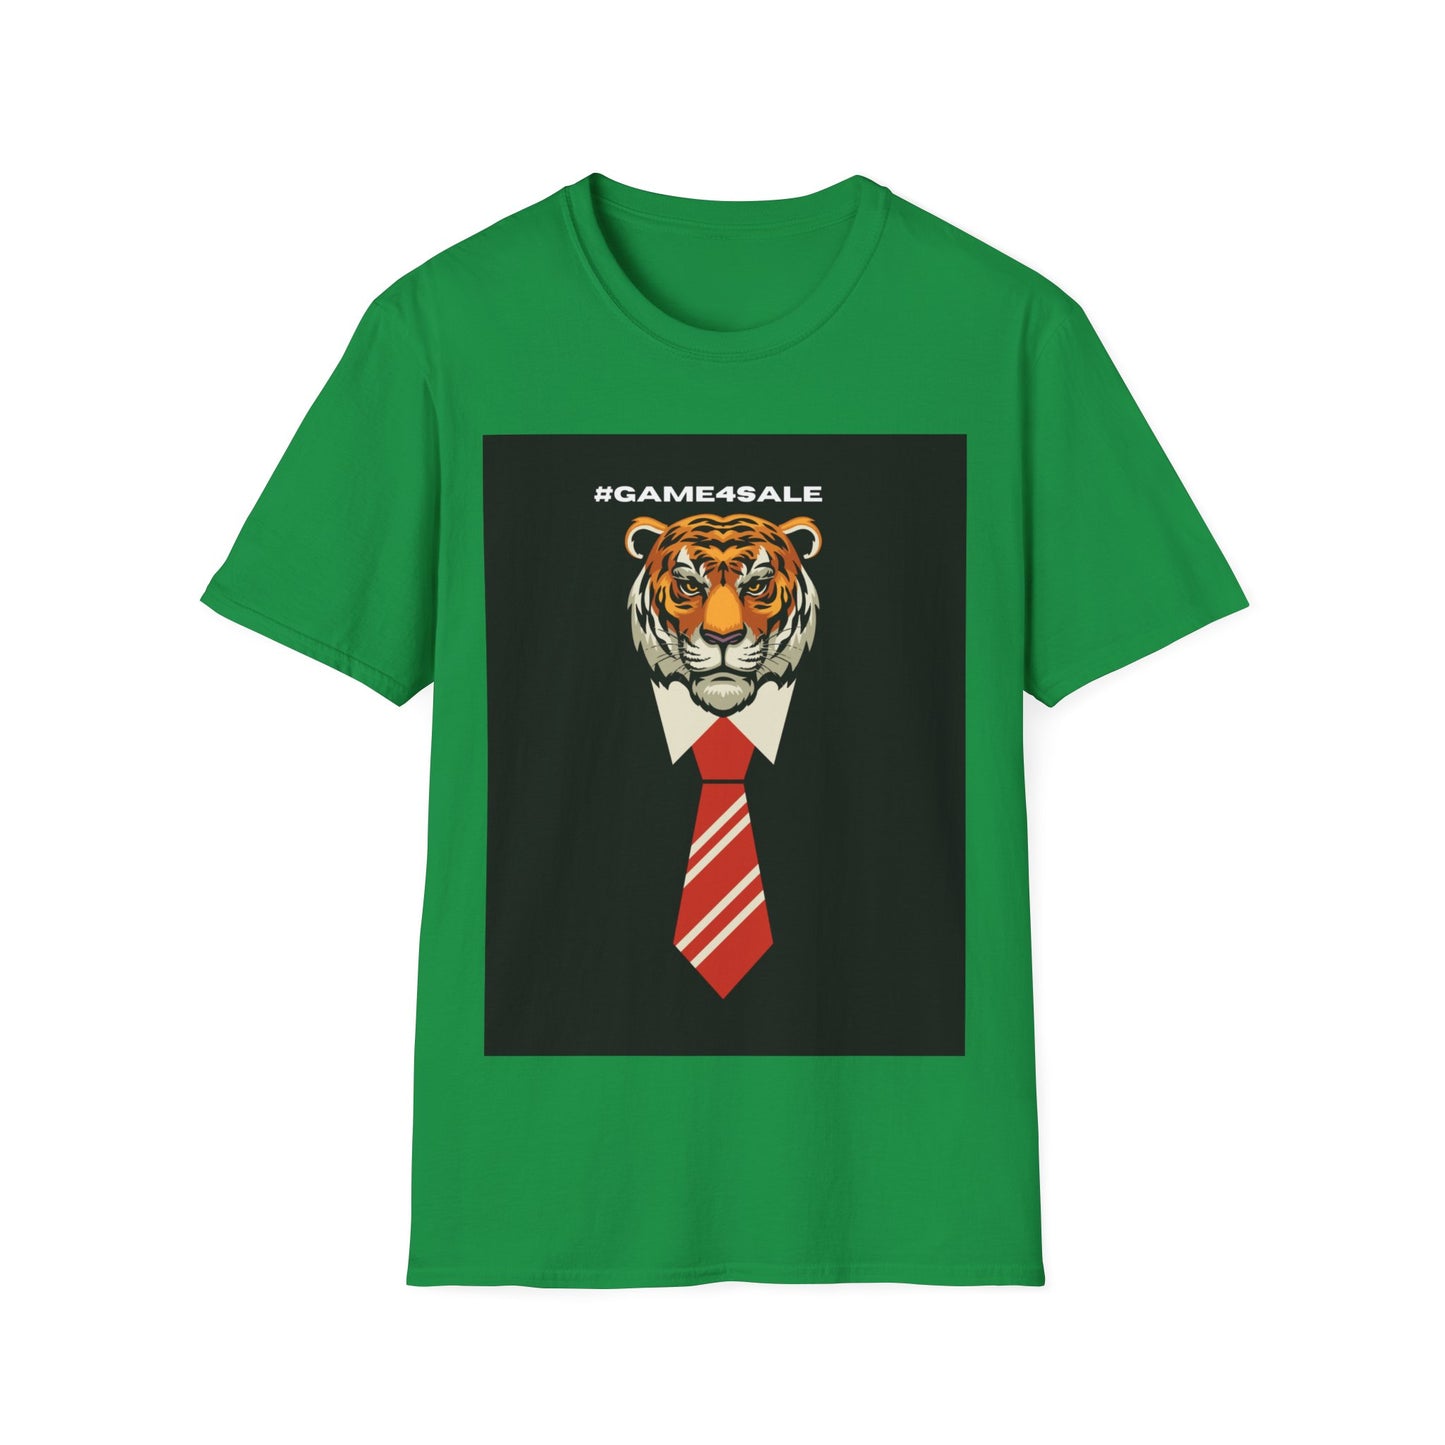 The Executive Shirt